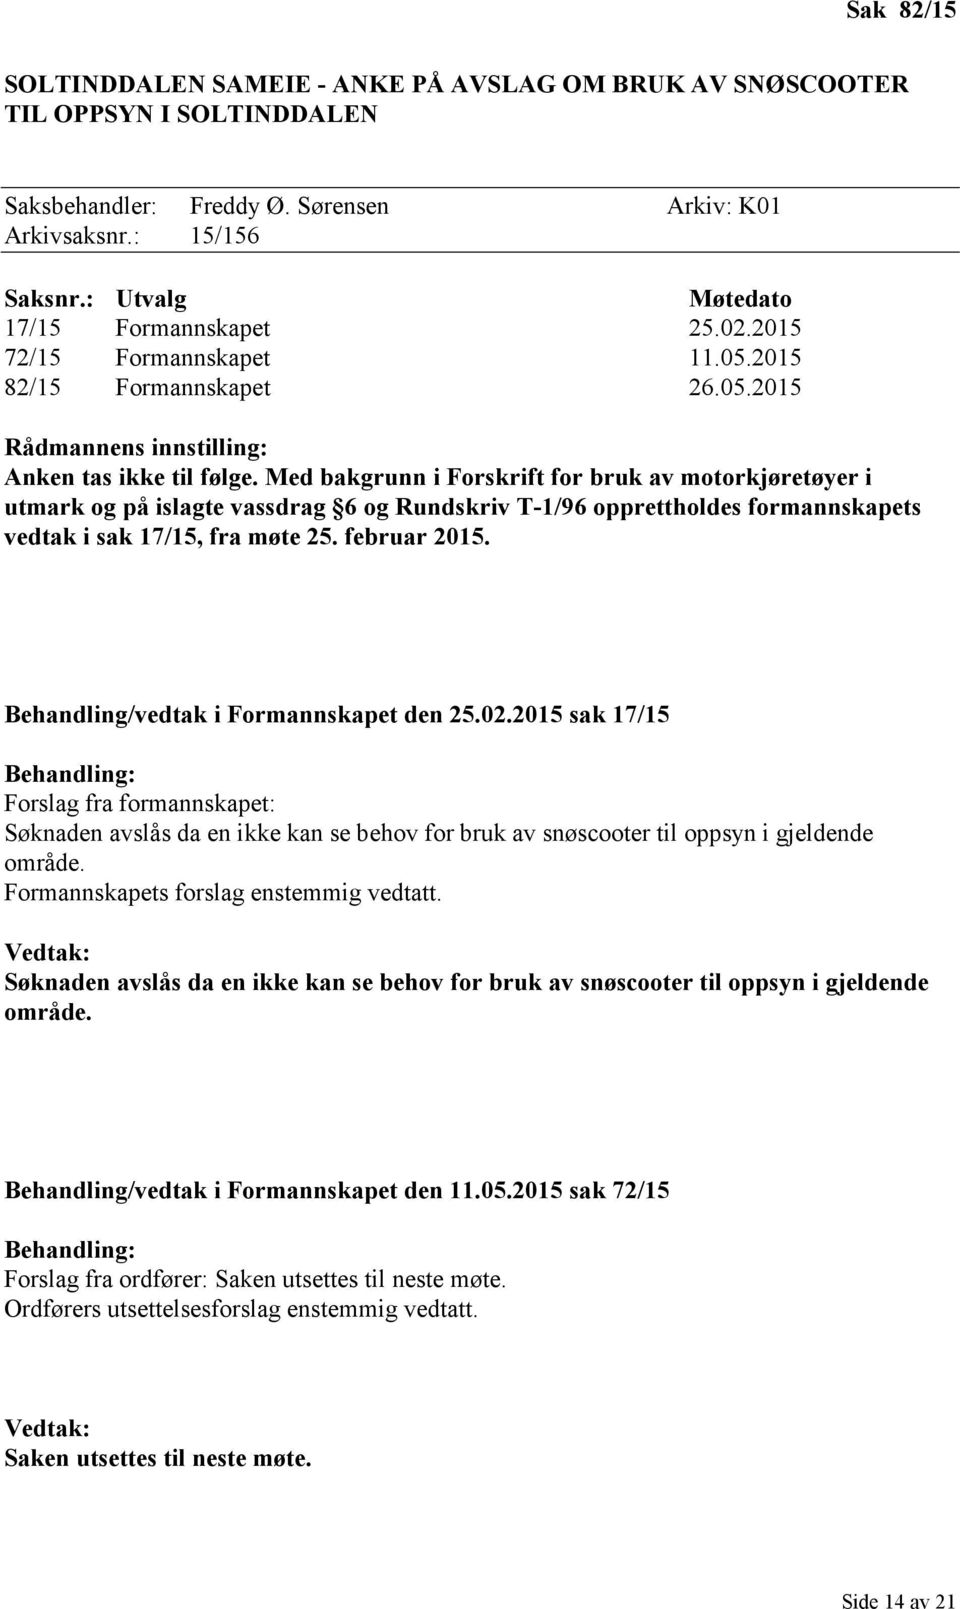 Med bakgrunn i Forskrift for bruk av motorkjøretøyer i utmark og på islagte vassdrag 6 og Rundskriv T-1/96 opprettholdes formannskapets vedtak i sak 17/15, fra møte 25. februar 2015.